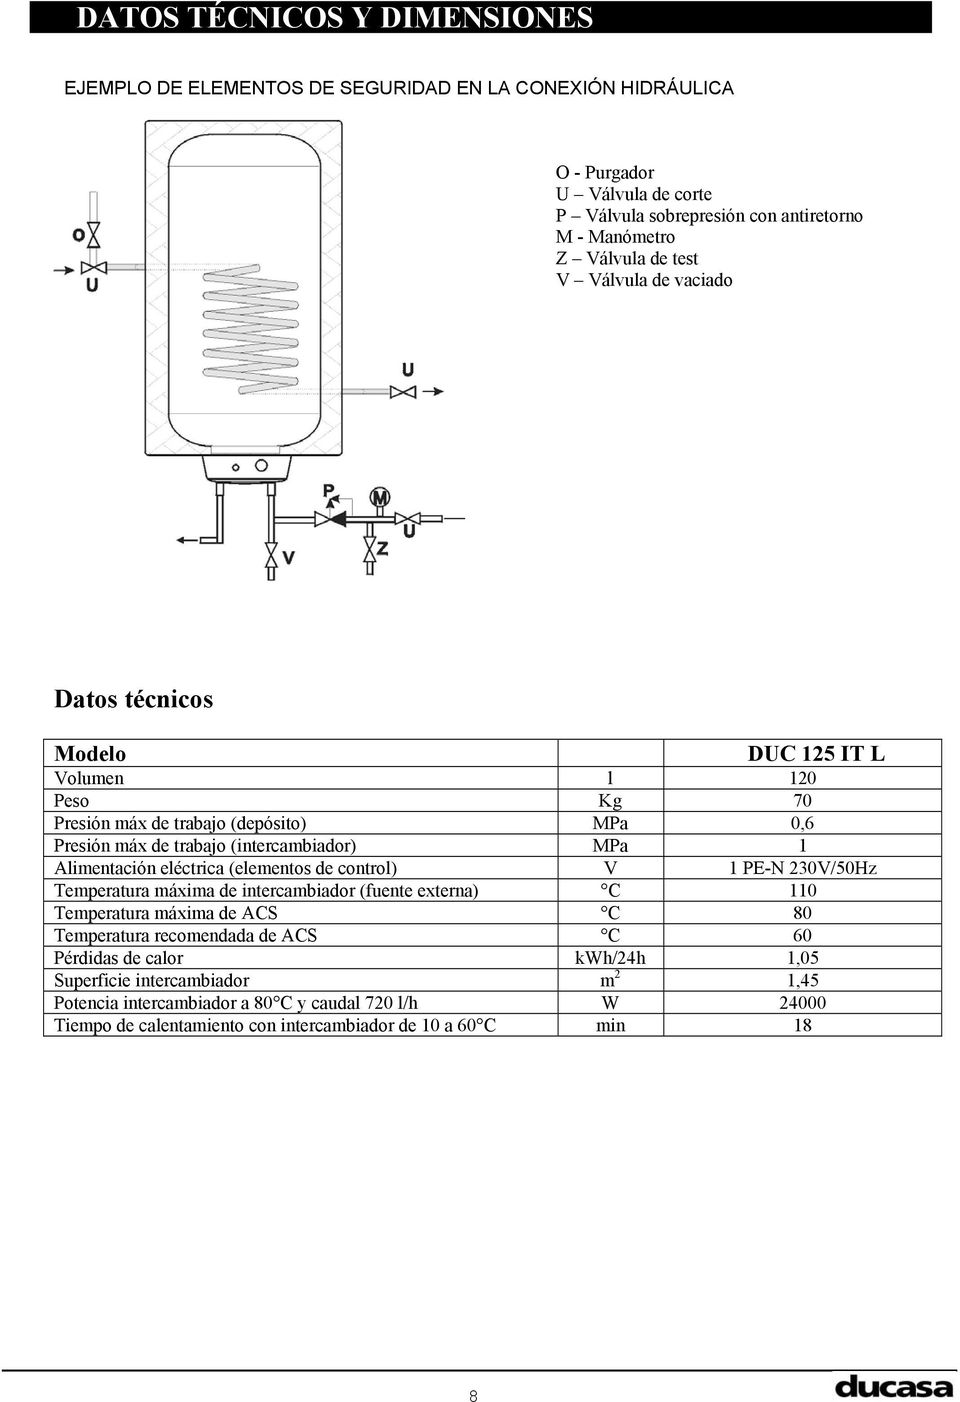 Alimentación eléctrica (elementos de control) V 1 PE-N 230V/50Hz Temperatura máxima de intercambiador (fuente externa) C 110 Temperatura máxima de ACS C 80 Temperatura recomendada de